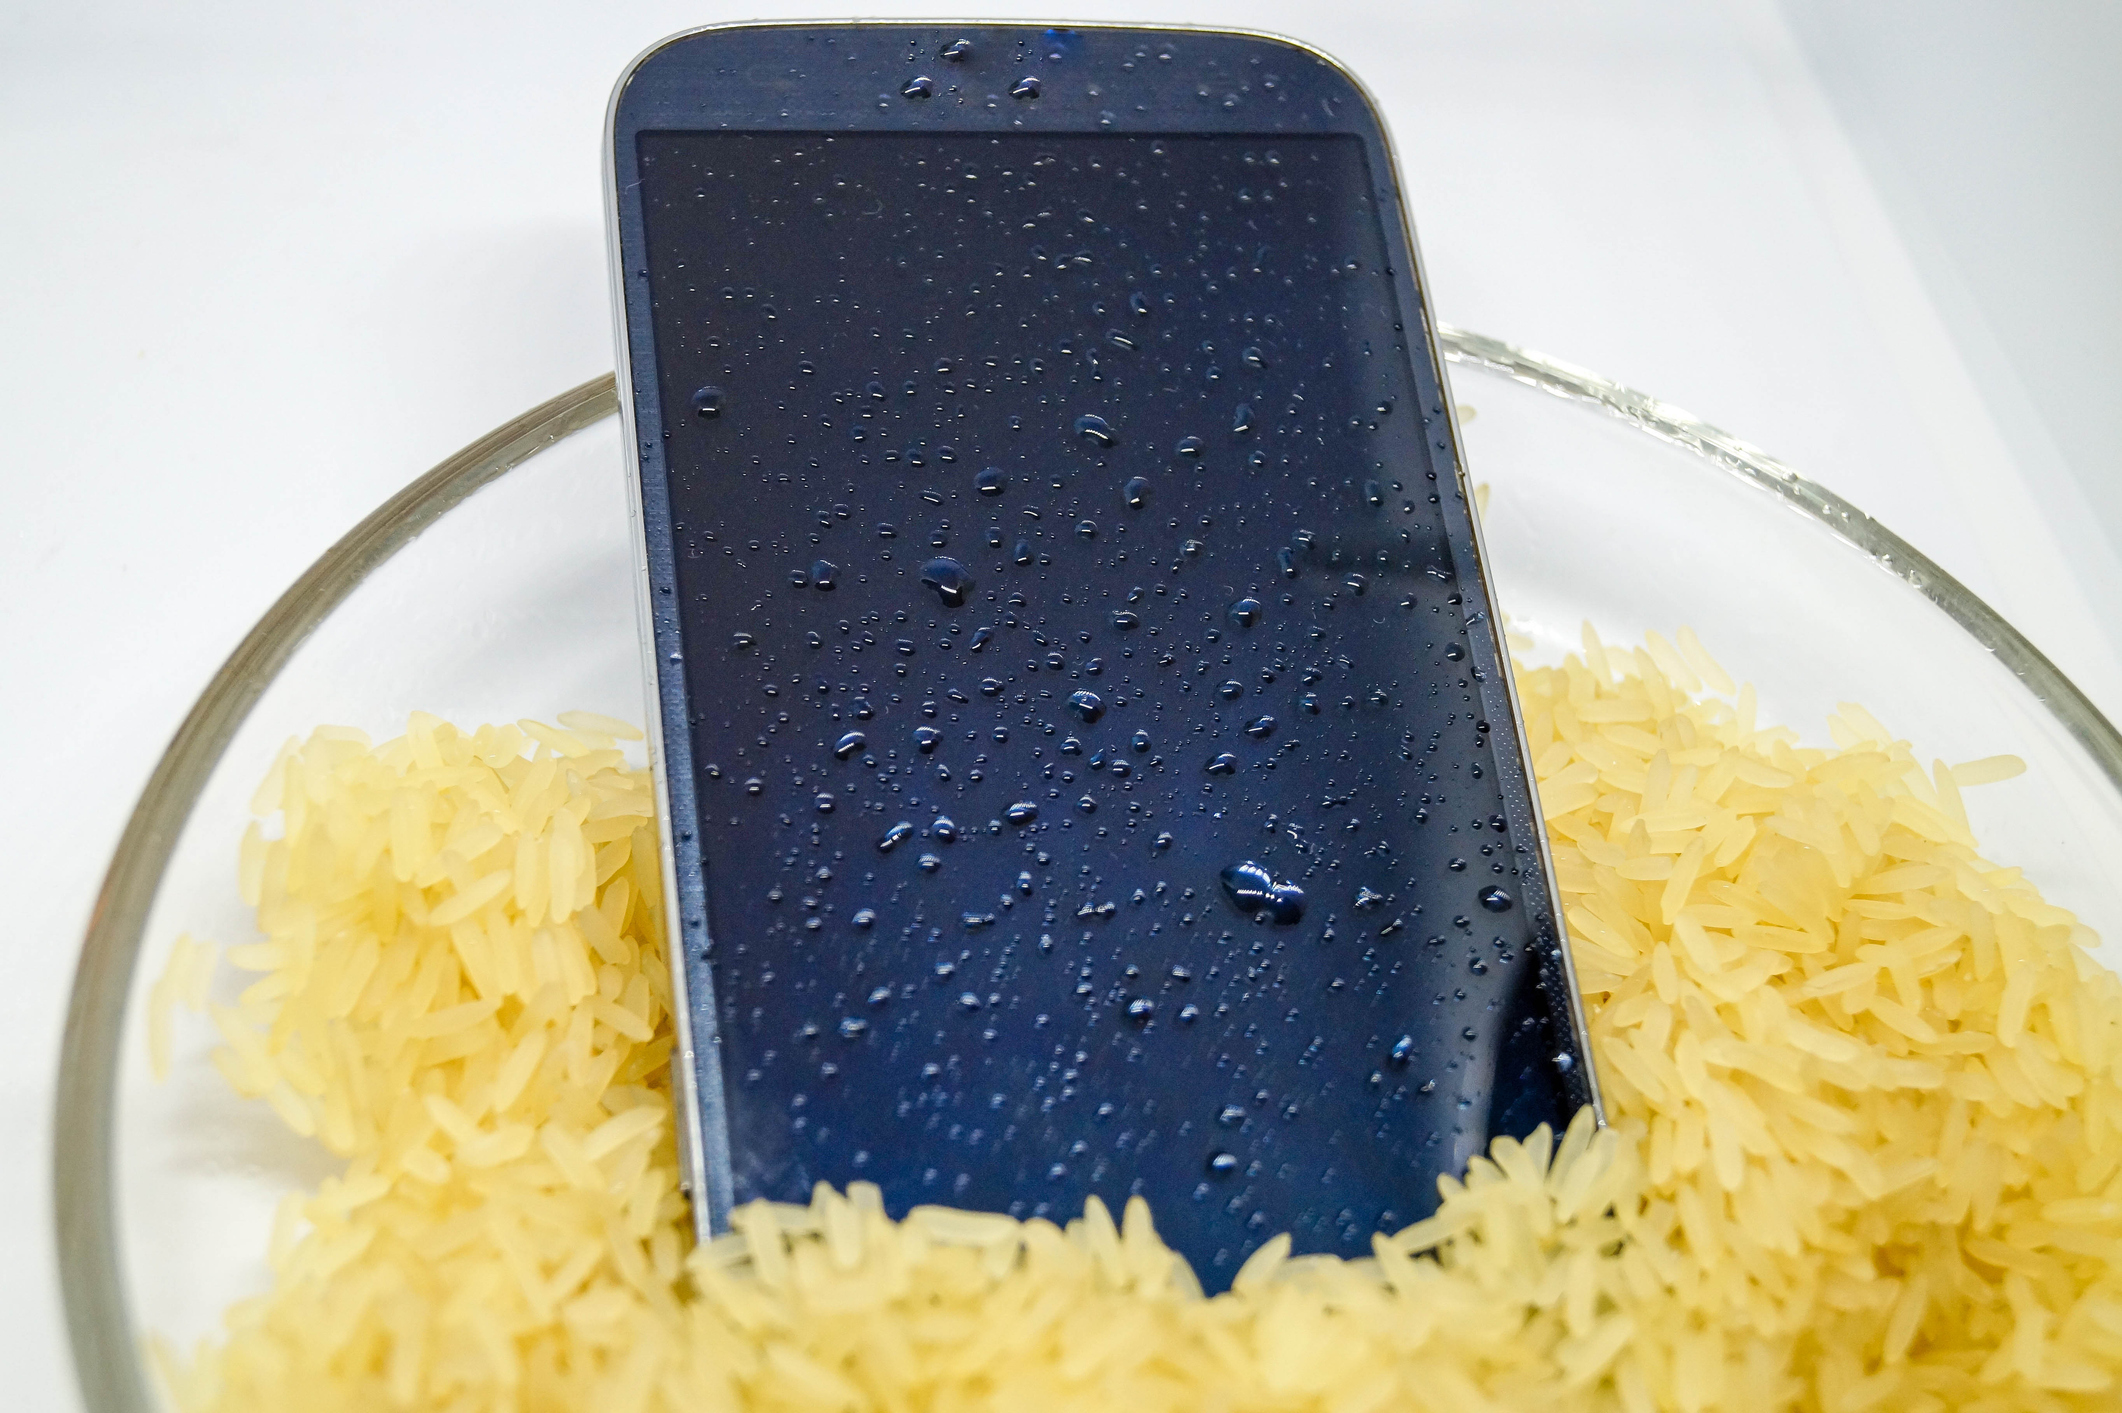 N'utilisez pas de riz pour faire sécher votre iPhone ! Apple a de meilleures techniques